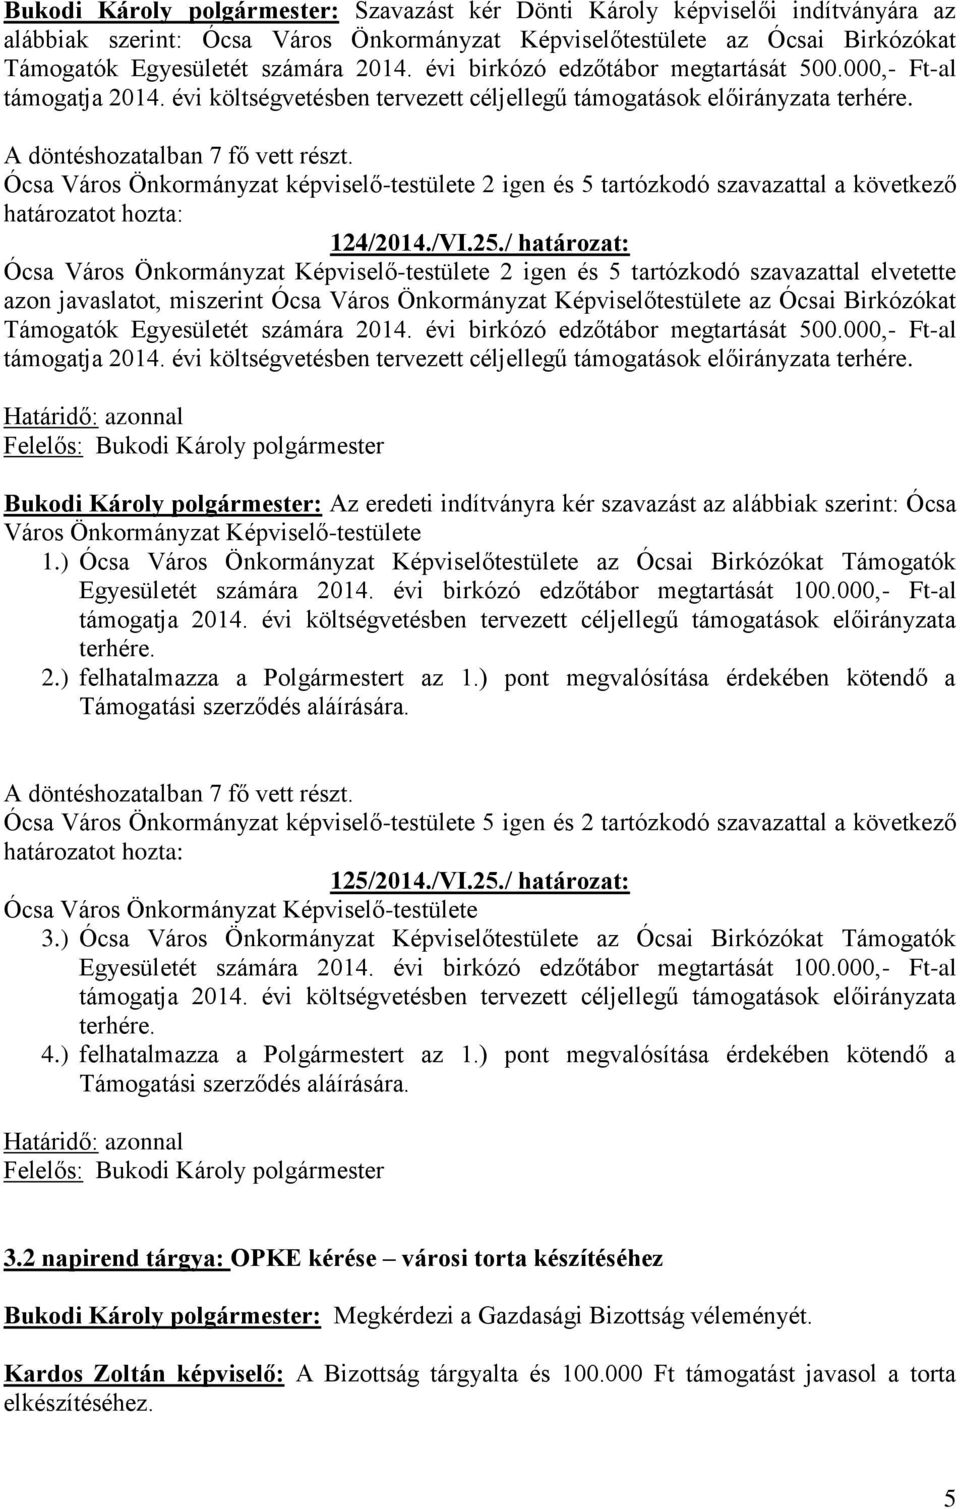 Ócsa Város Önkormányzat képviselő-testülete 2 igen és 5 tartózkodó szavazattal a következő 124/2014./VI.25.